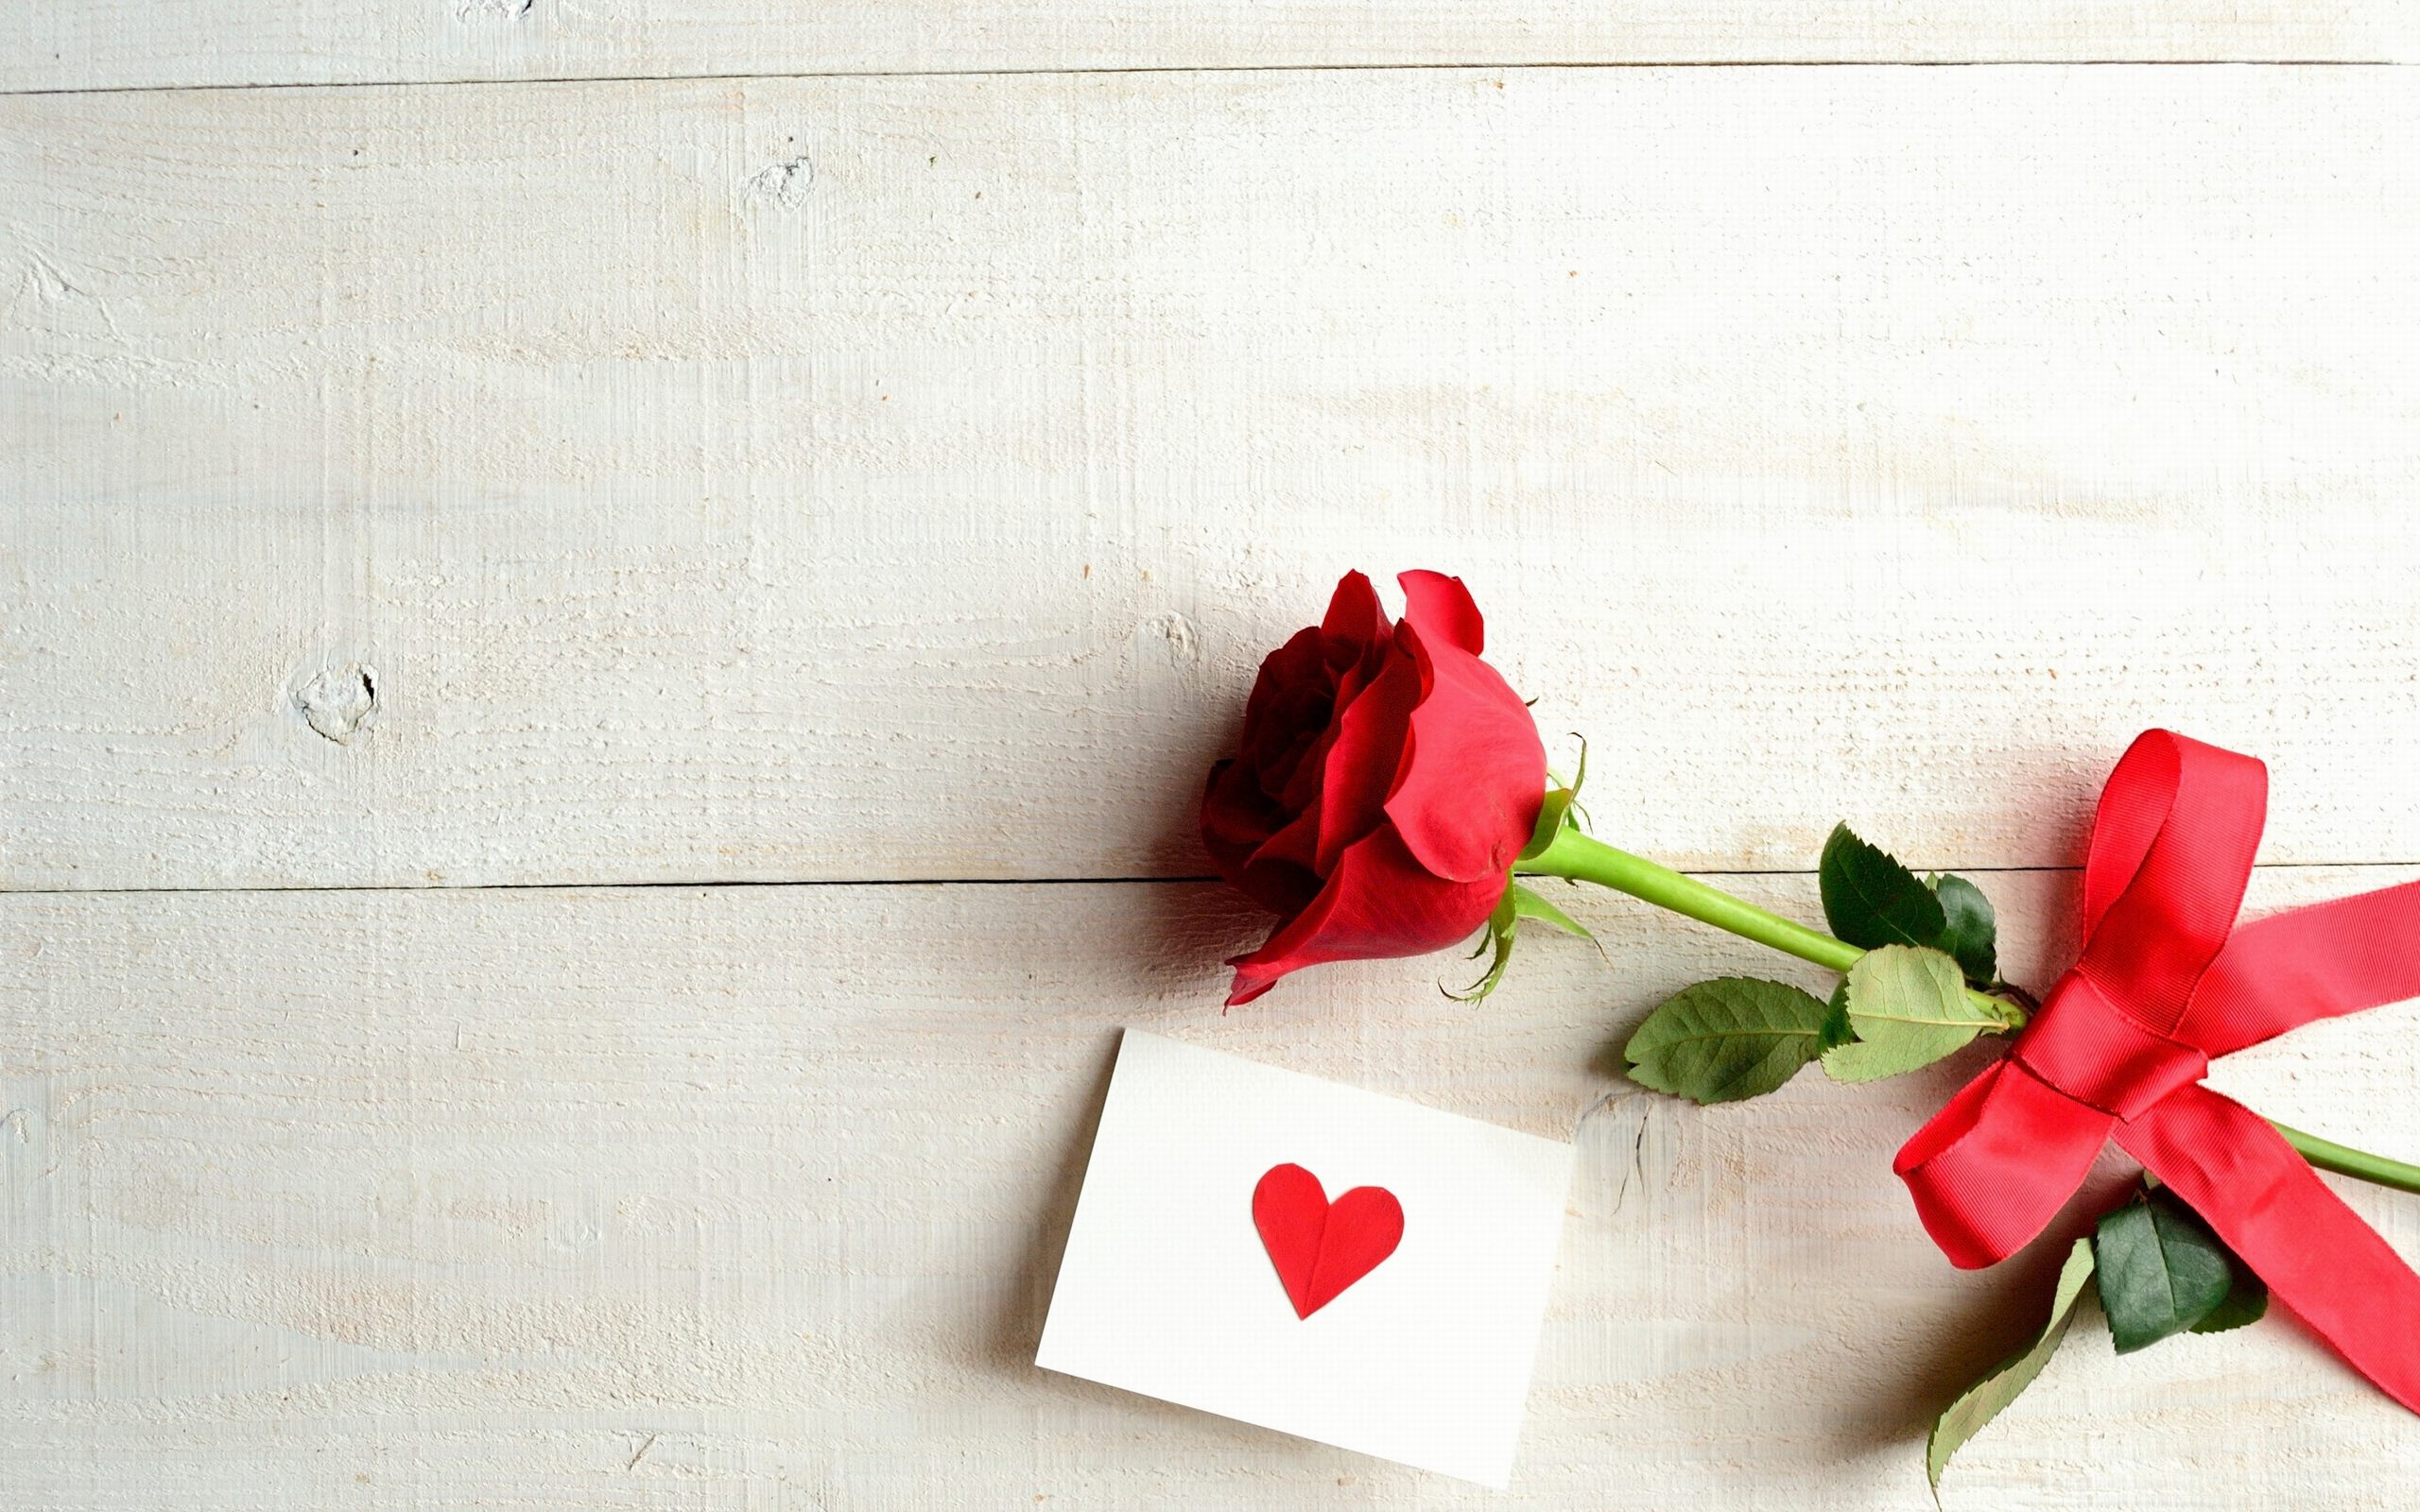 Ribbon Flower Of Love Card Wallpaper For Desktop Amp Mobile